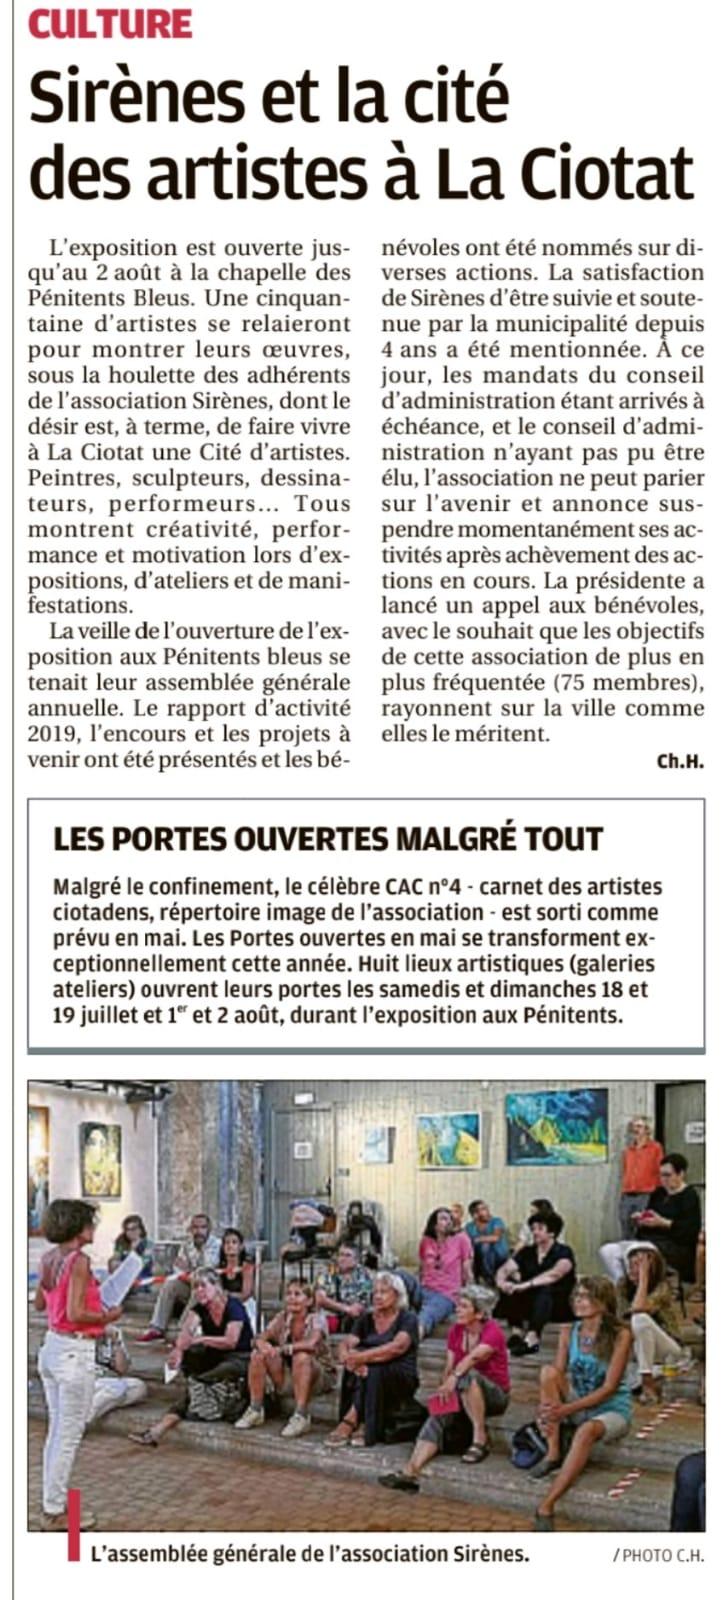 Extrait de presse Exposition Collective des Artistes Sirenes à La Chapelle des Penitents Bleus, La Ciotat